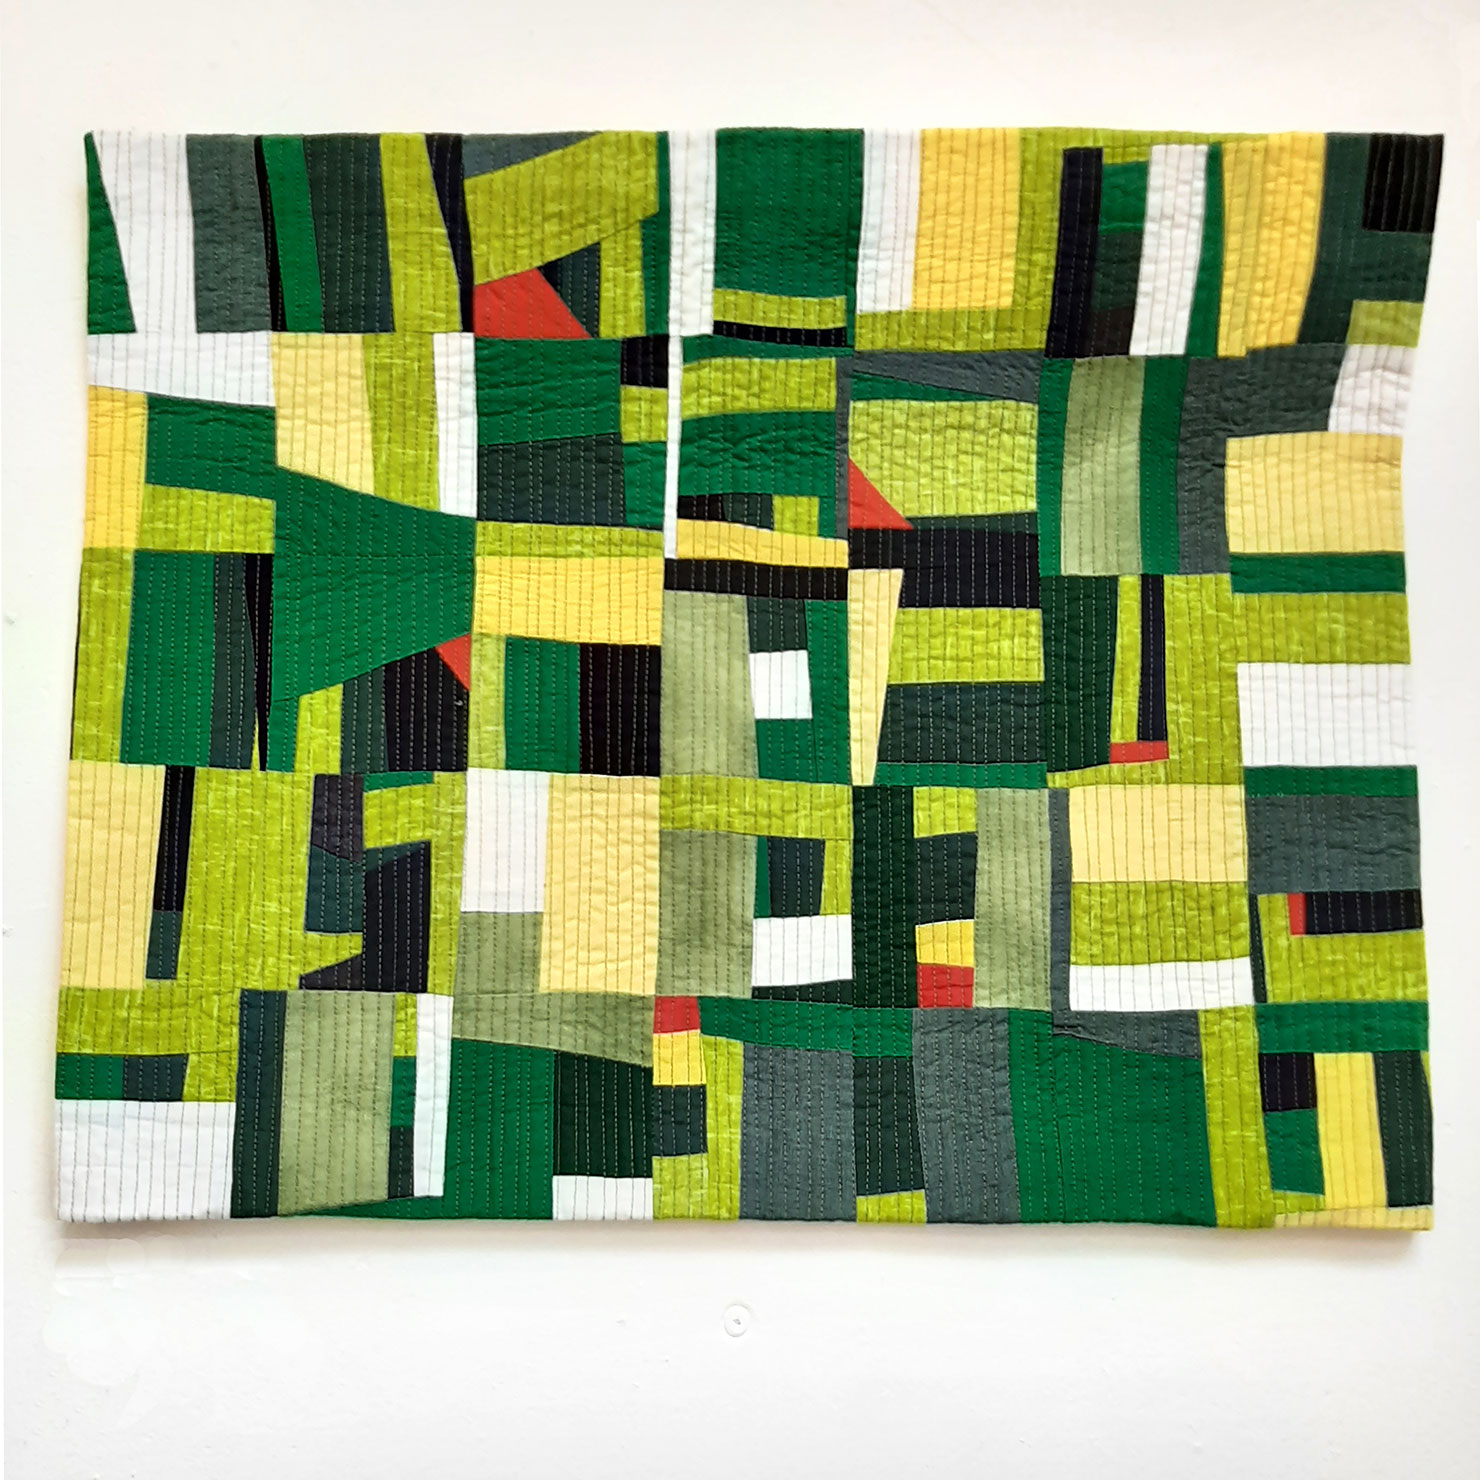 Allison-James art through textiles